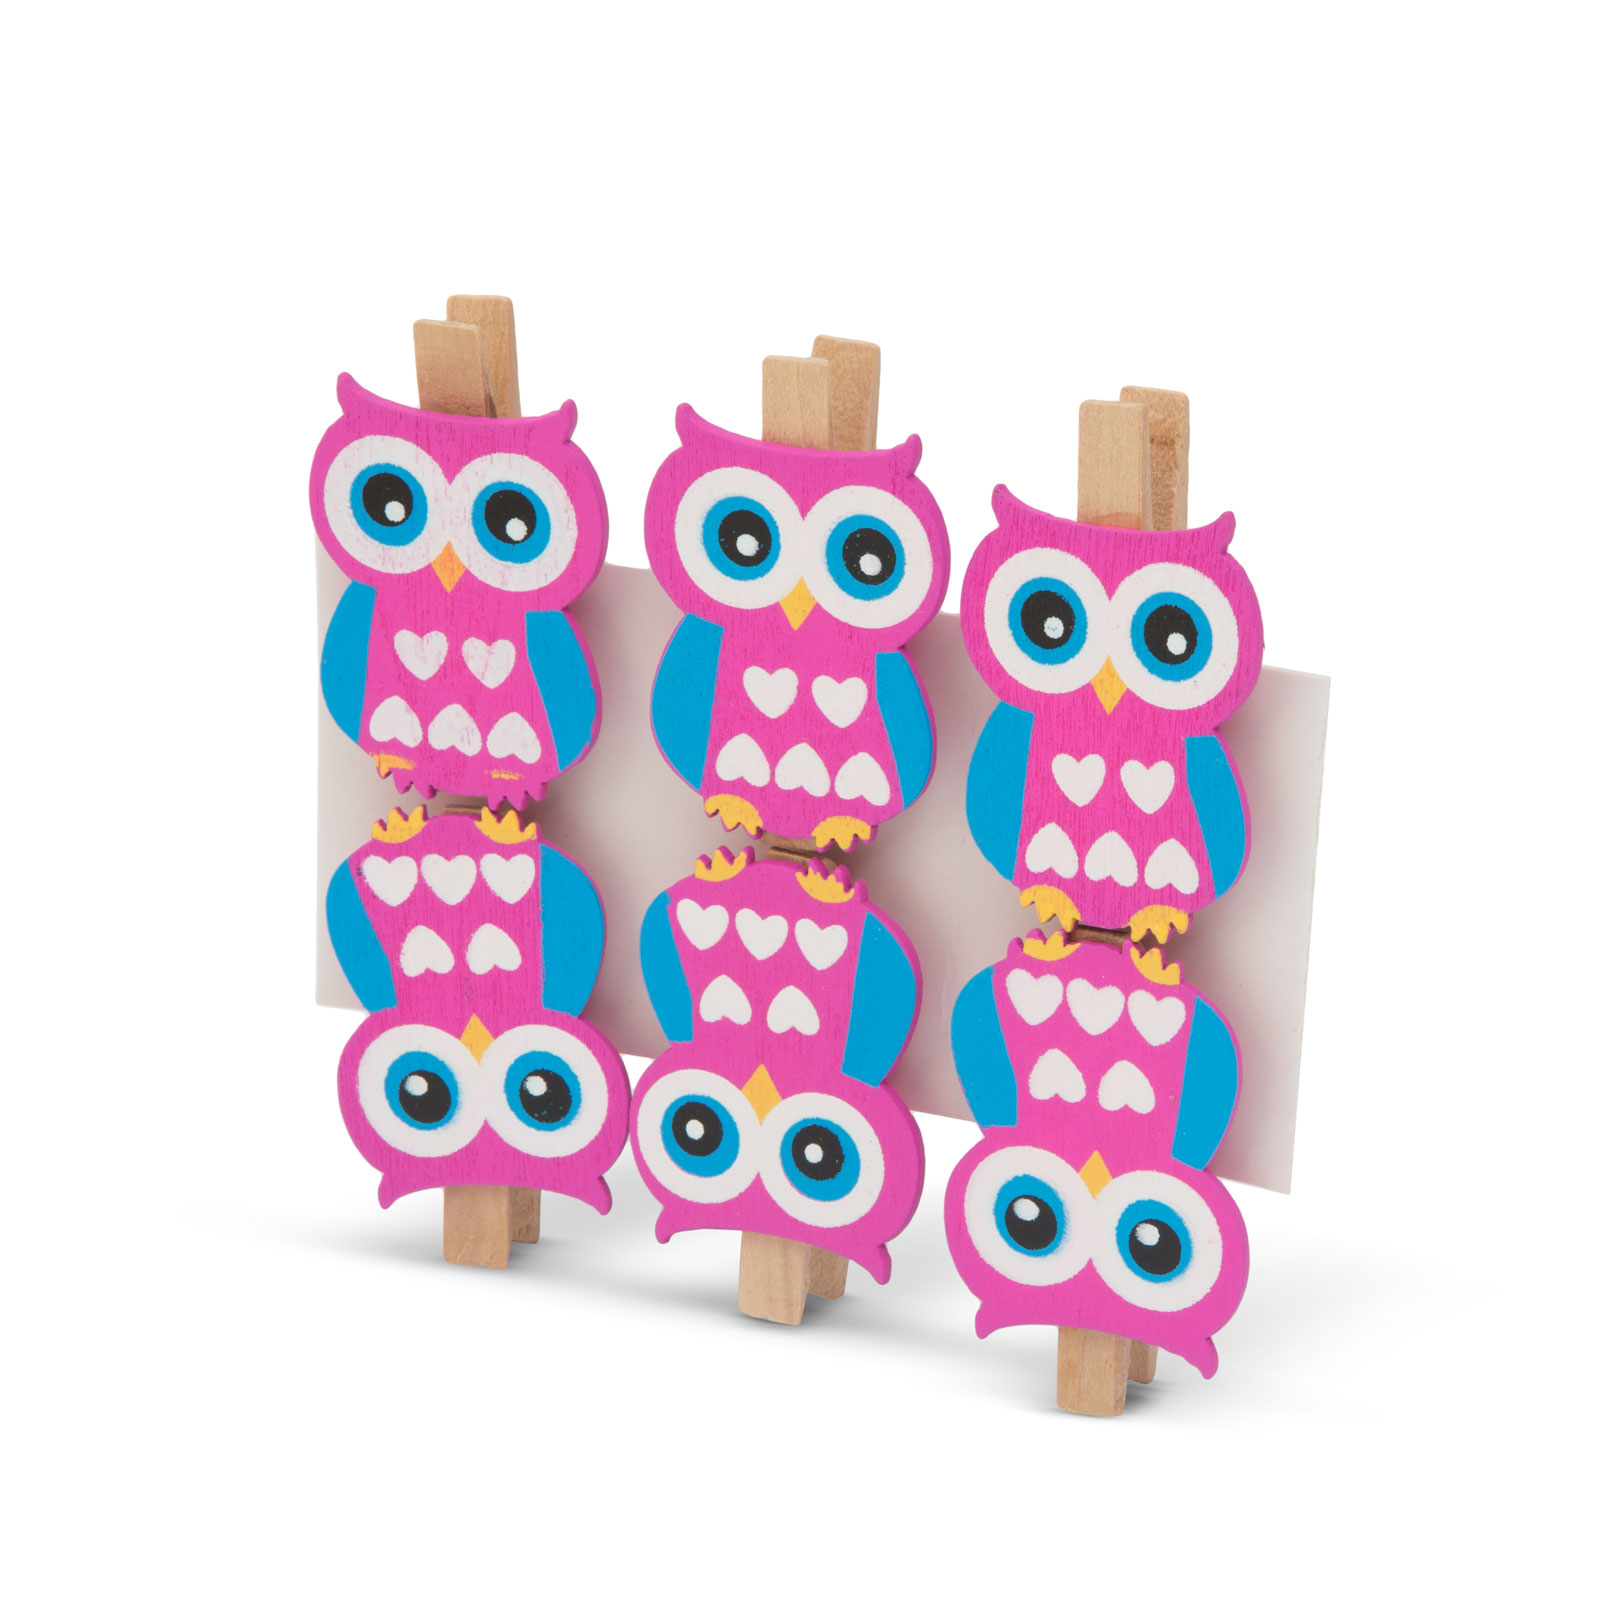 Tweezers Set - owl thumb